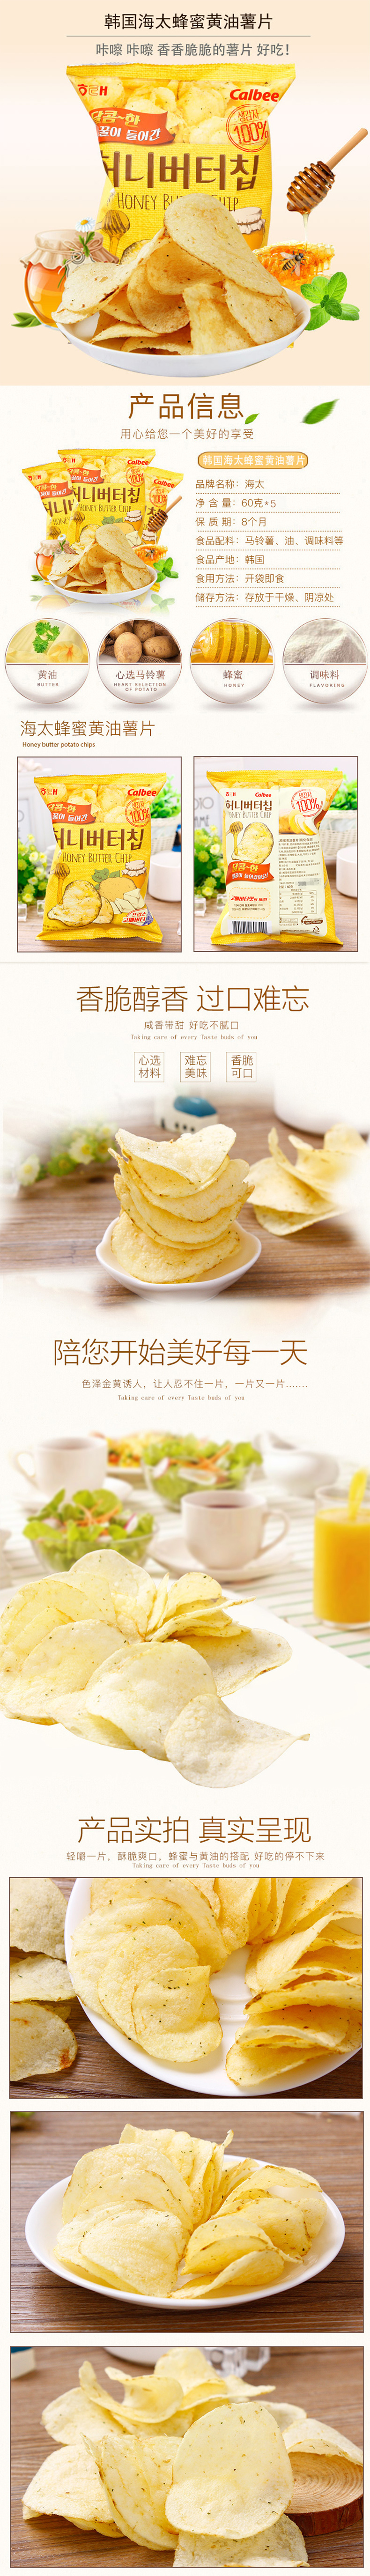 淘宝美工麦九网红零食韩国进口蜂蜜薯片详情页作品